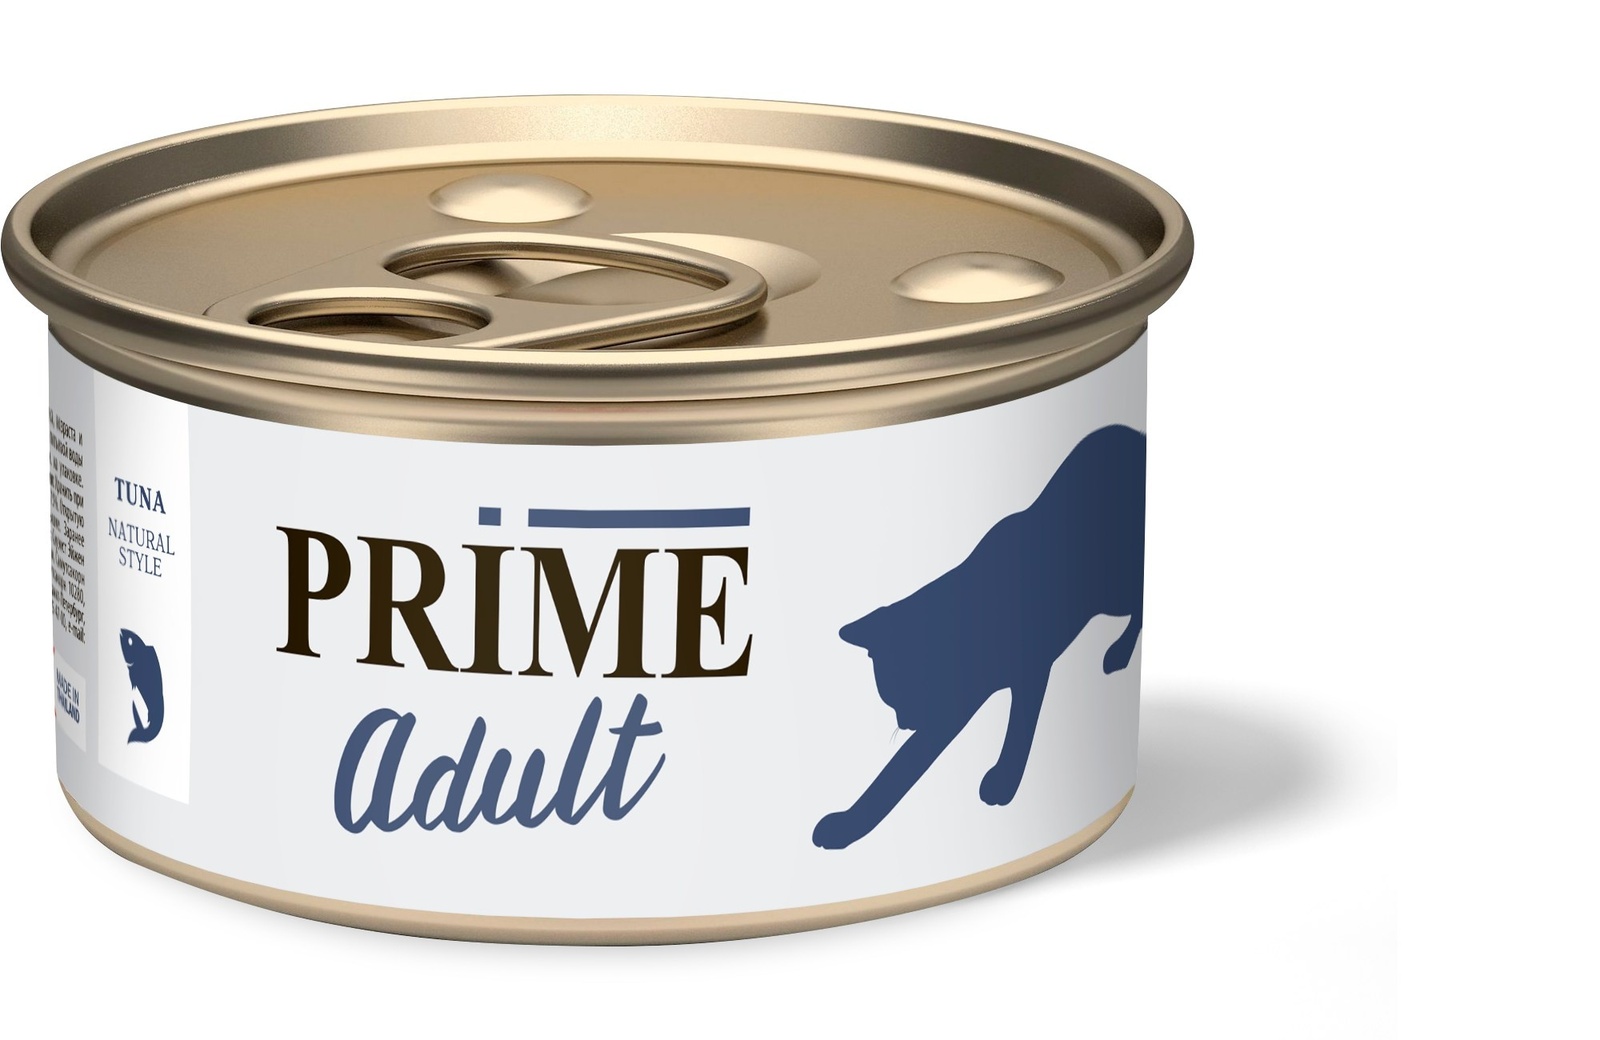 Prime Prime консервы для кошек тунец в собственном соку (70 г) prime prime консервы для кошек тунец в собственном соку 70 г